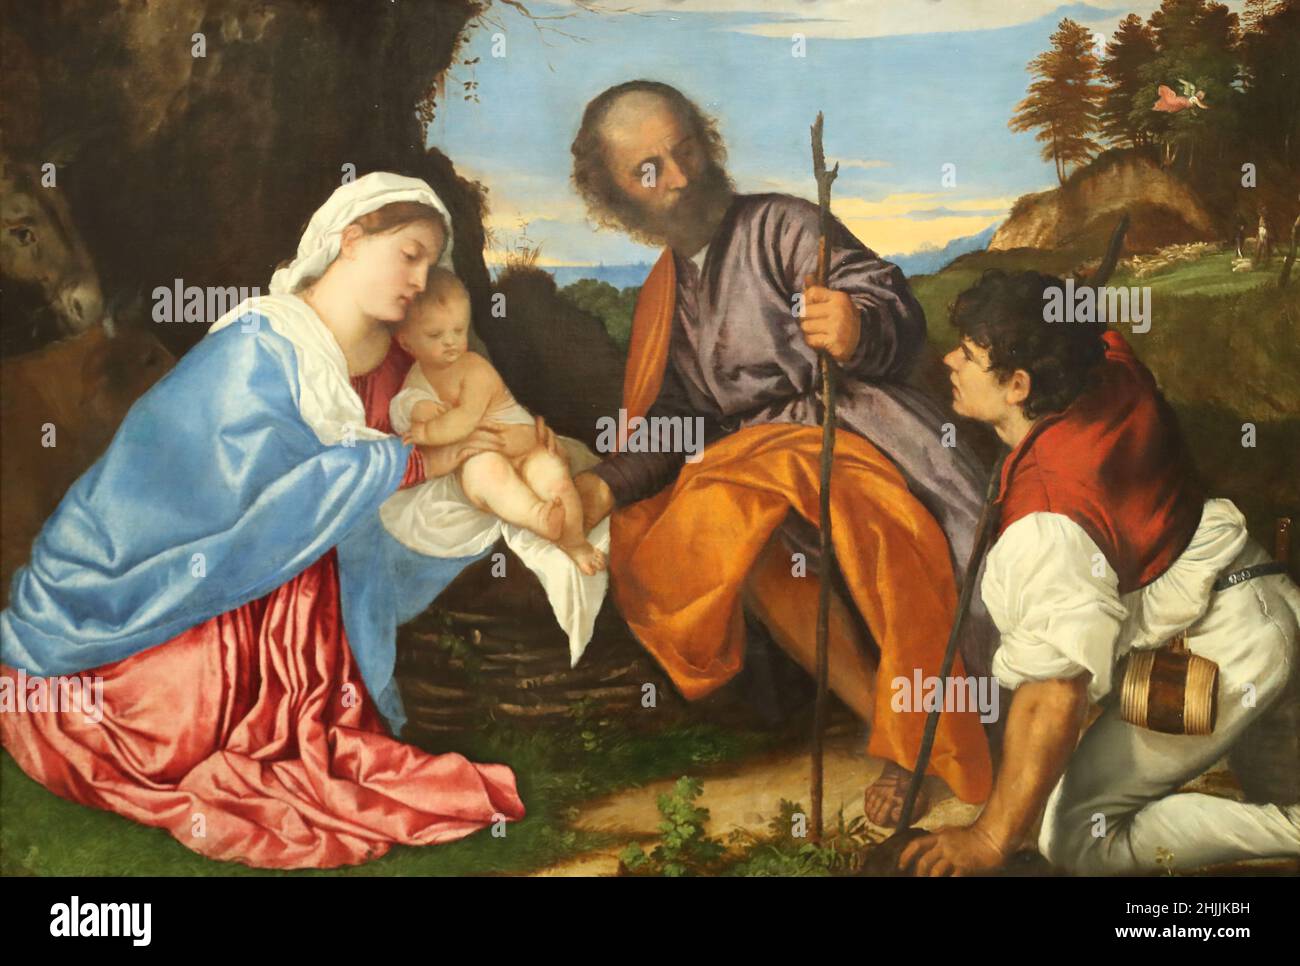 La Sainte famille avec un berger du peintre italien de la Renaissance Titien à la National Gallery, Londres, Royaume-Uni Banque D'Images